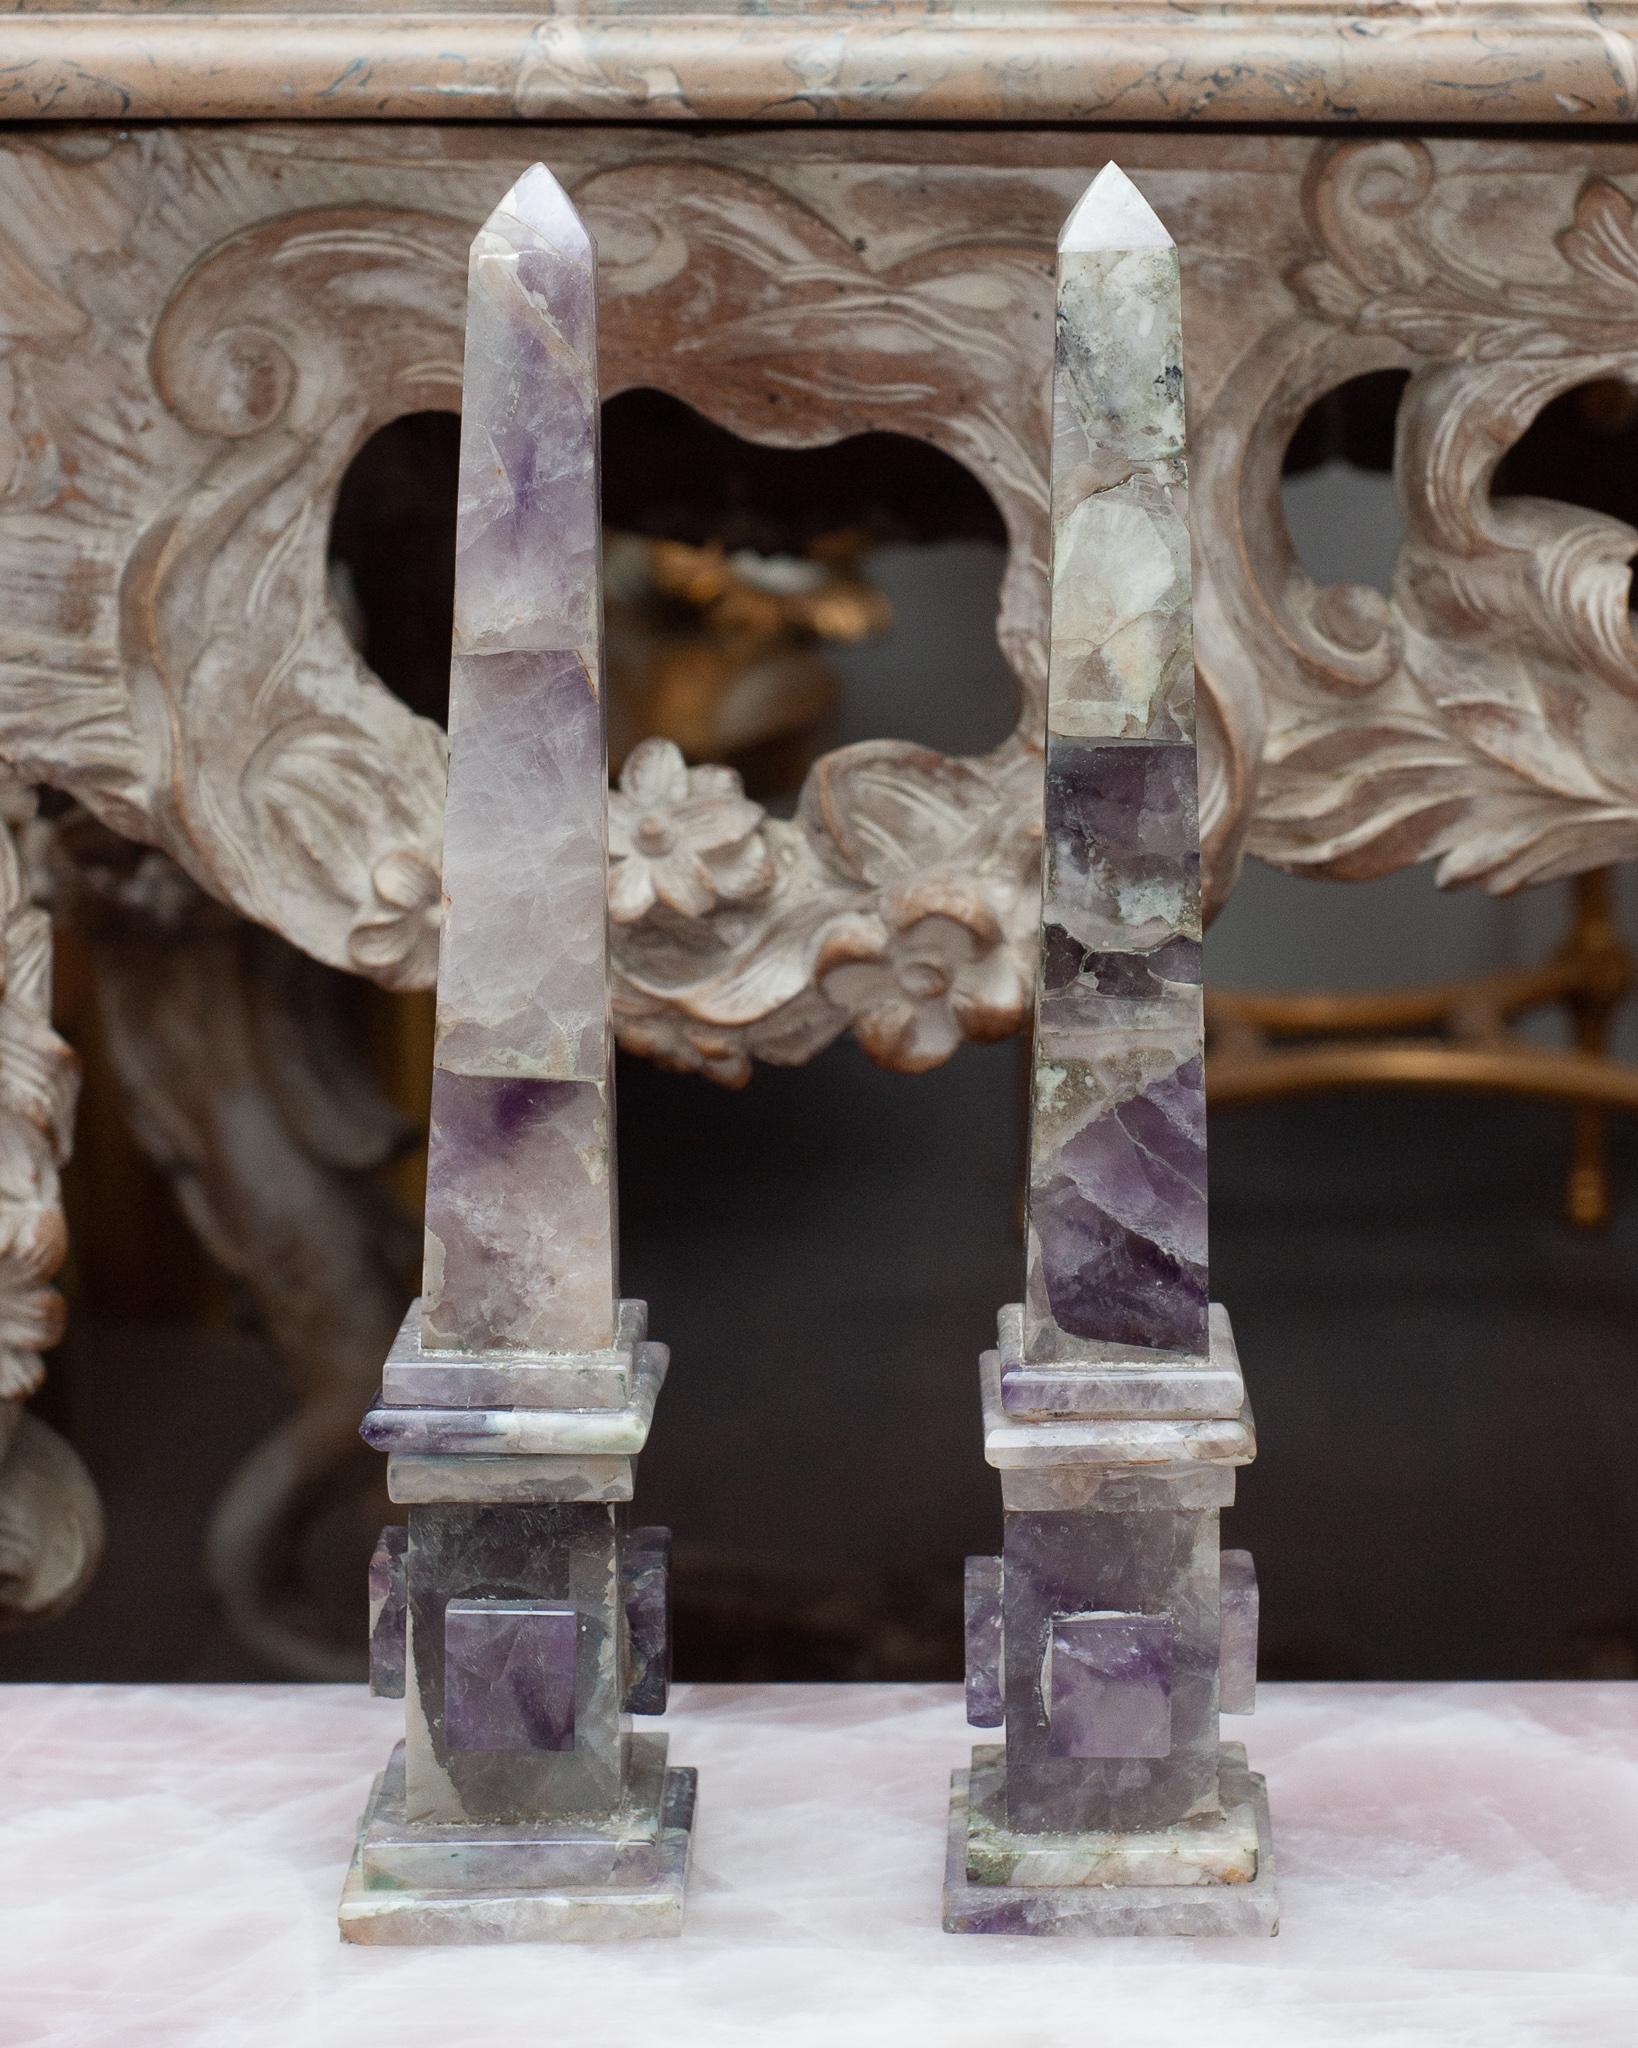 Cette paire d'obélisques spectaculaires est fabriquée en améthyste,  cristal semi-précieux translucide de couleur lavande à mauve qui est une forme de quartz que l'on trouve dans de nombreux endroits du monde et qui se forme sous forme de cristaux